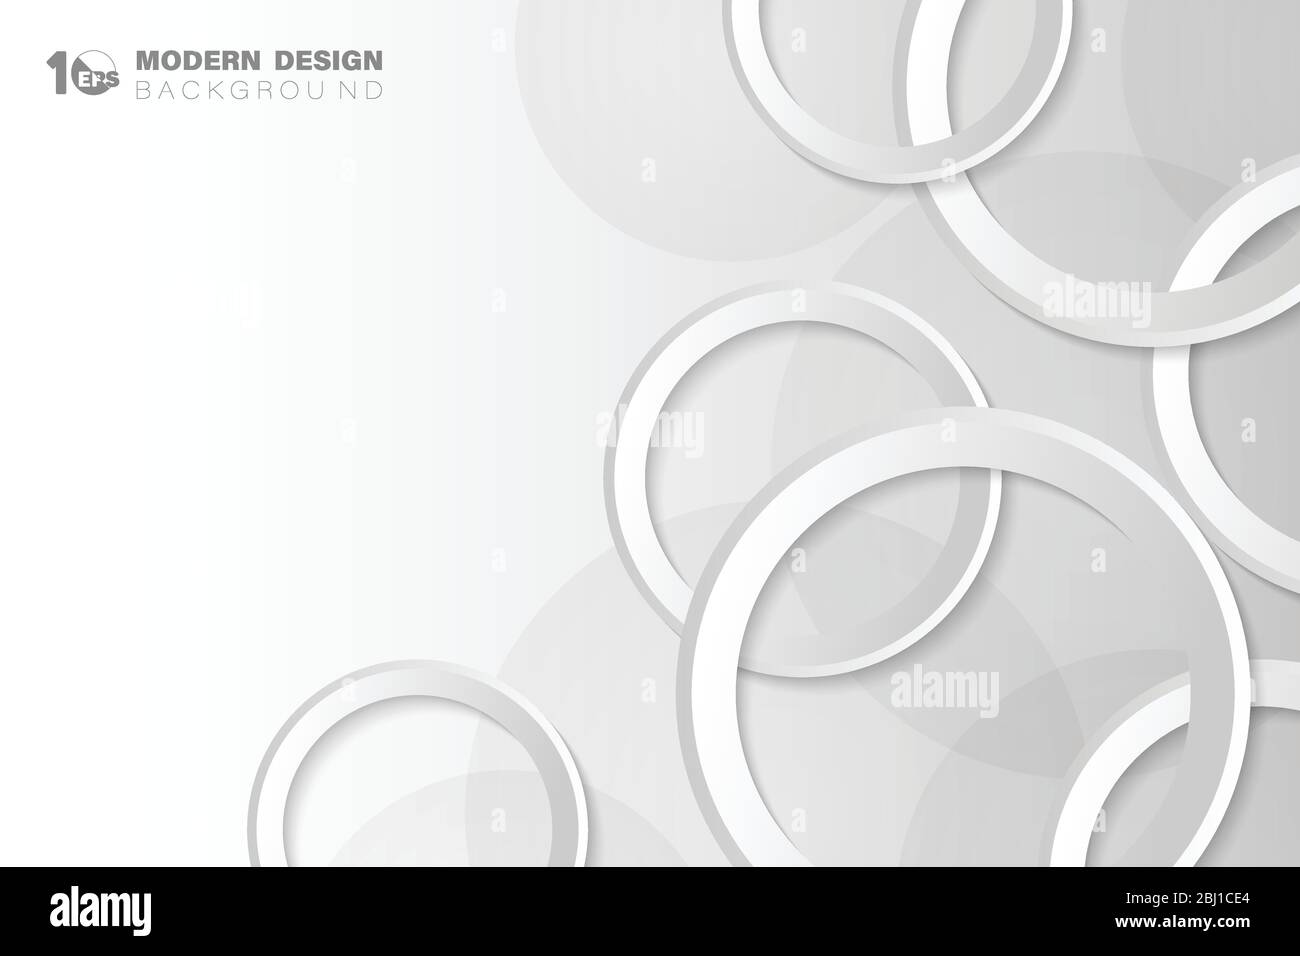 Dégradé abstrait blanc et gris technologie de cercle forme tech design art fond. Décorez pour l'annonce, l'affiche, l'œuvre d'art, le modèle, l'impression. Ill Illustration de Vecteur